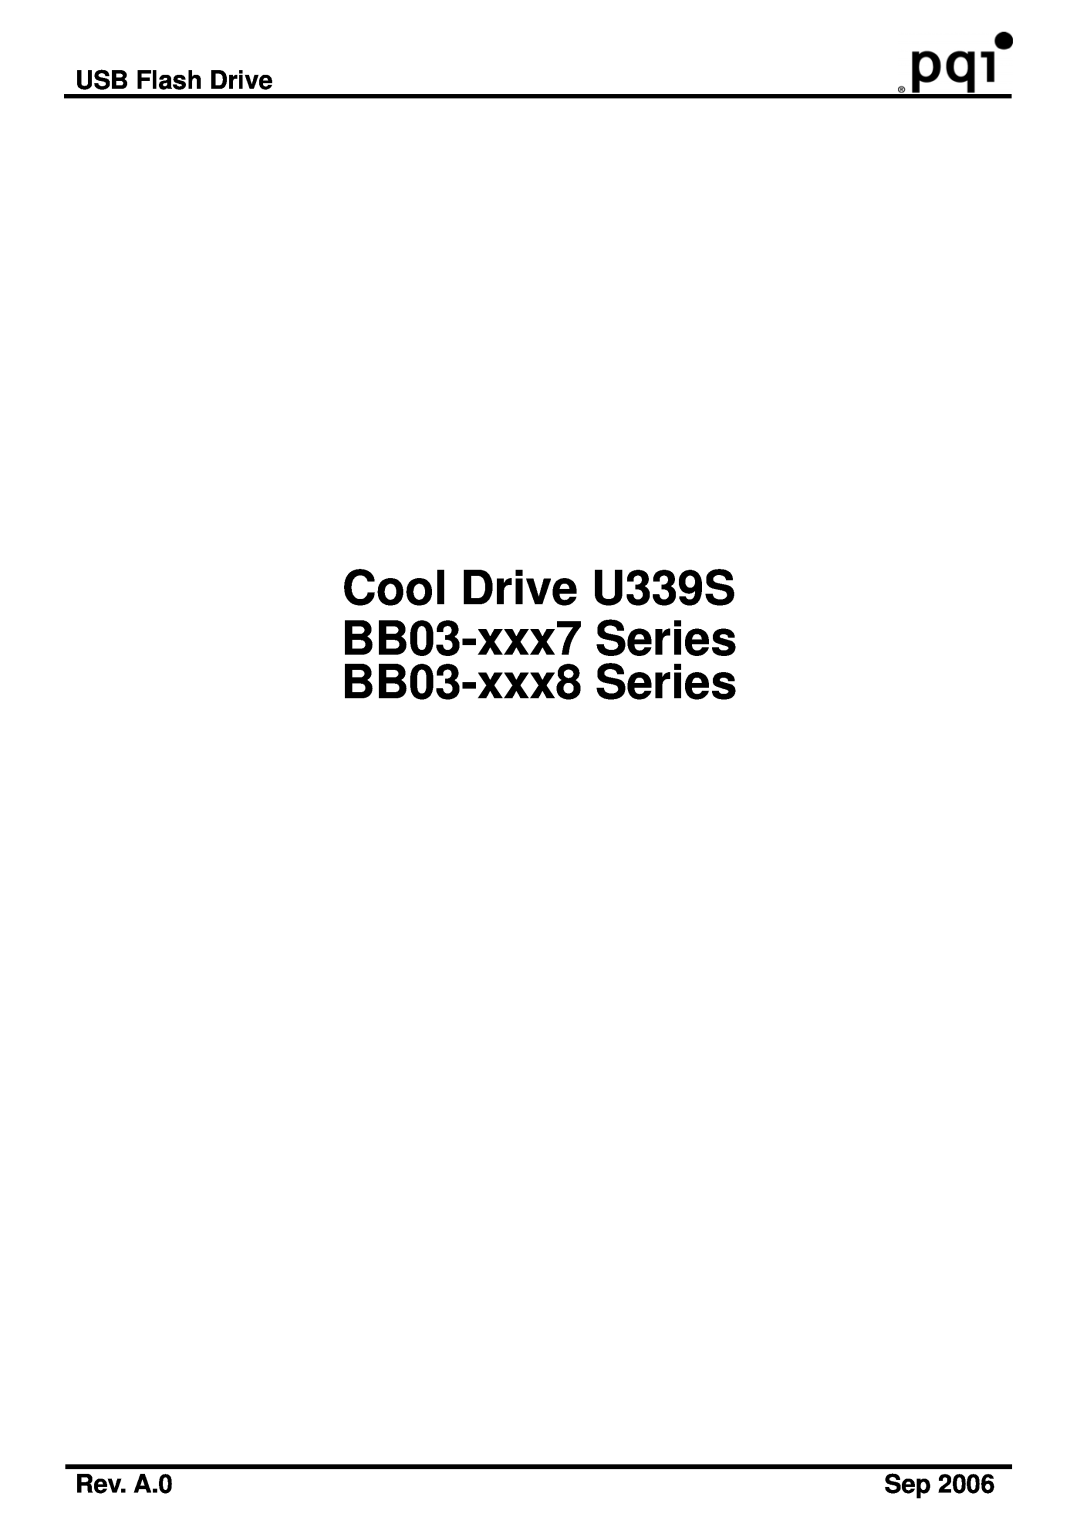 PQI manual USB Flash Drive, Rev. A.0, Cool Drive U339S BB03-xxx7 Series BB03-xxx8 Series 